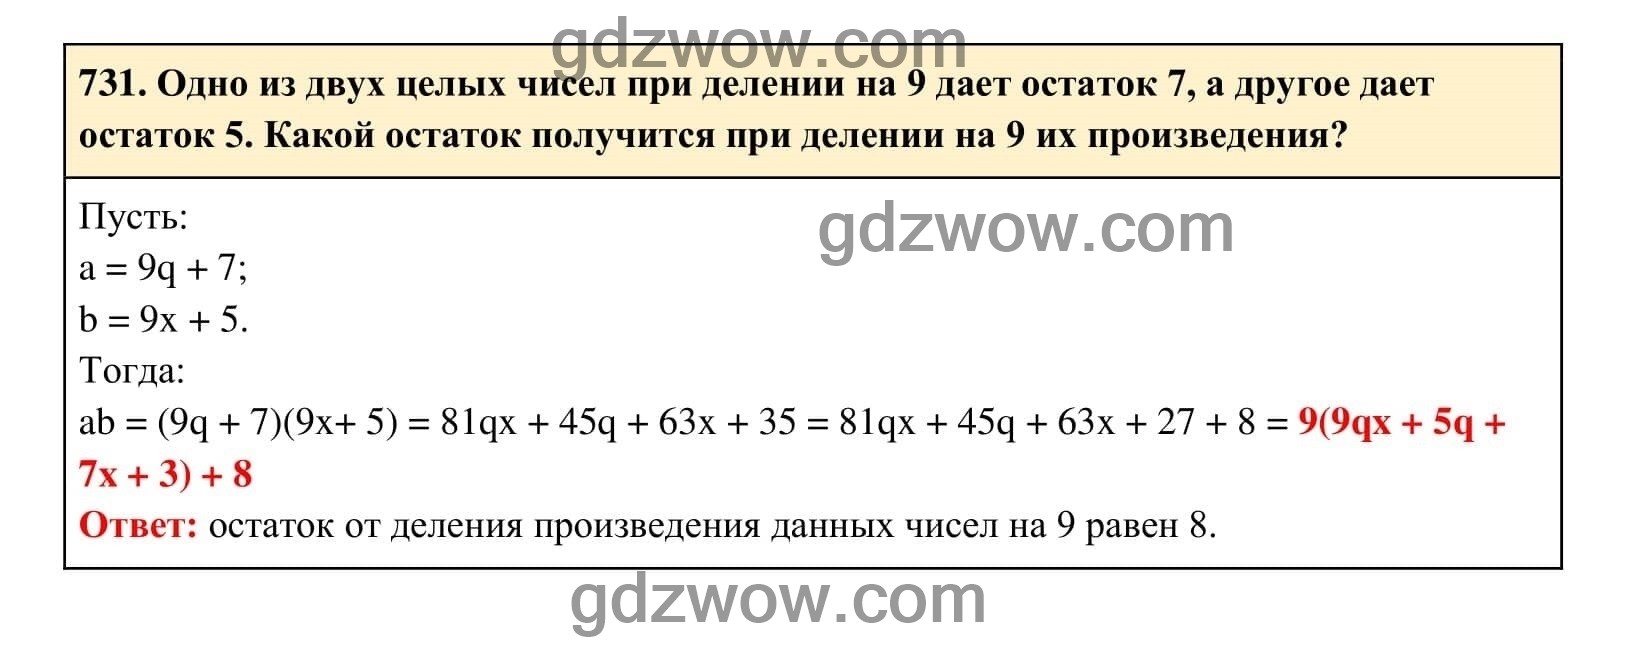 Упражнение 731 - ГДЗ по Алгебре 7 класс Учебник Макарычев (решебник) - GDZwow